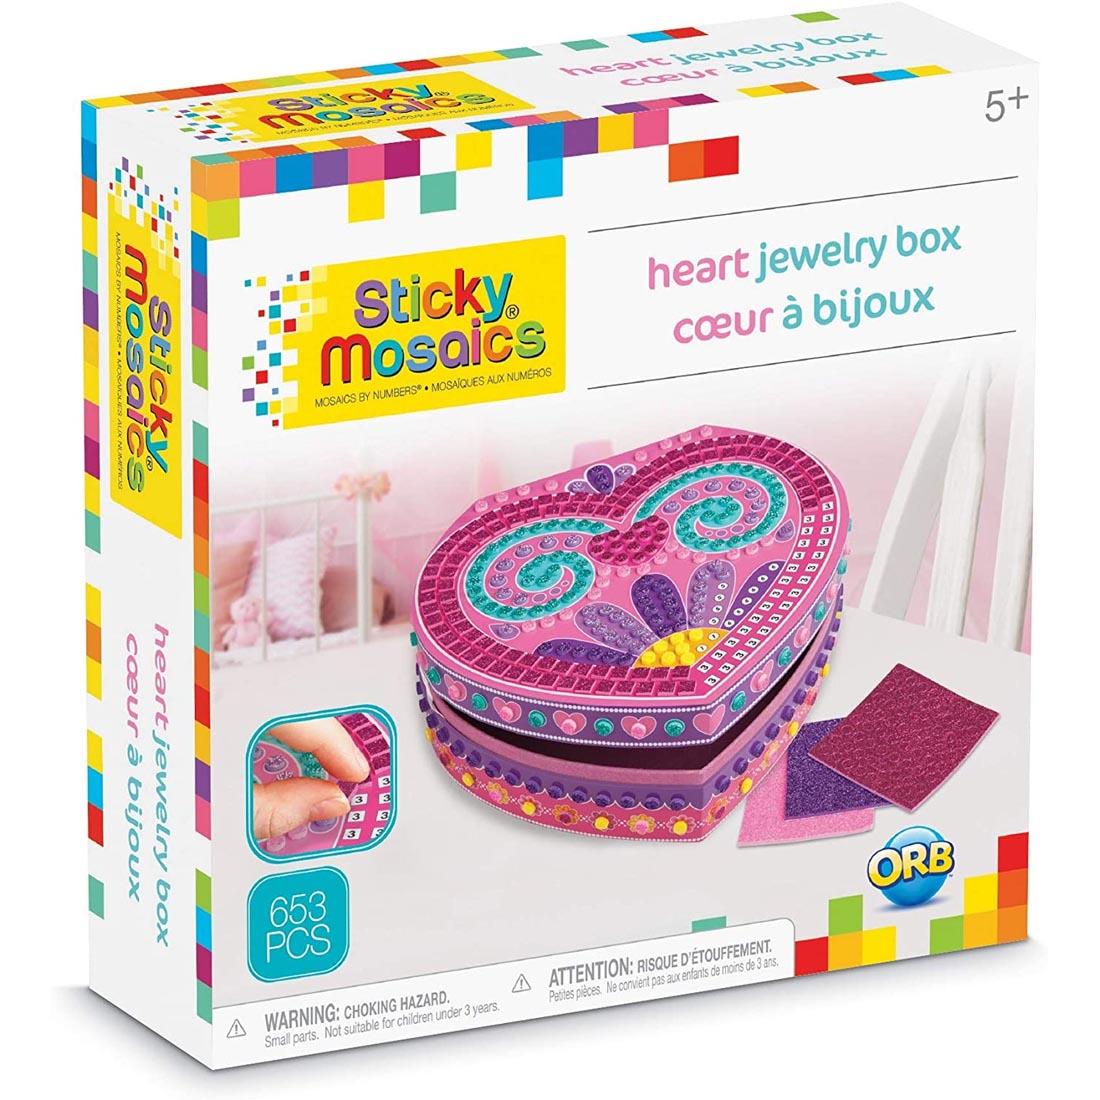 Box front of Sticky Mosaics Heart Jewelry Box